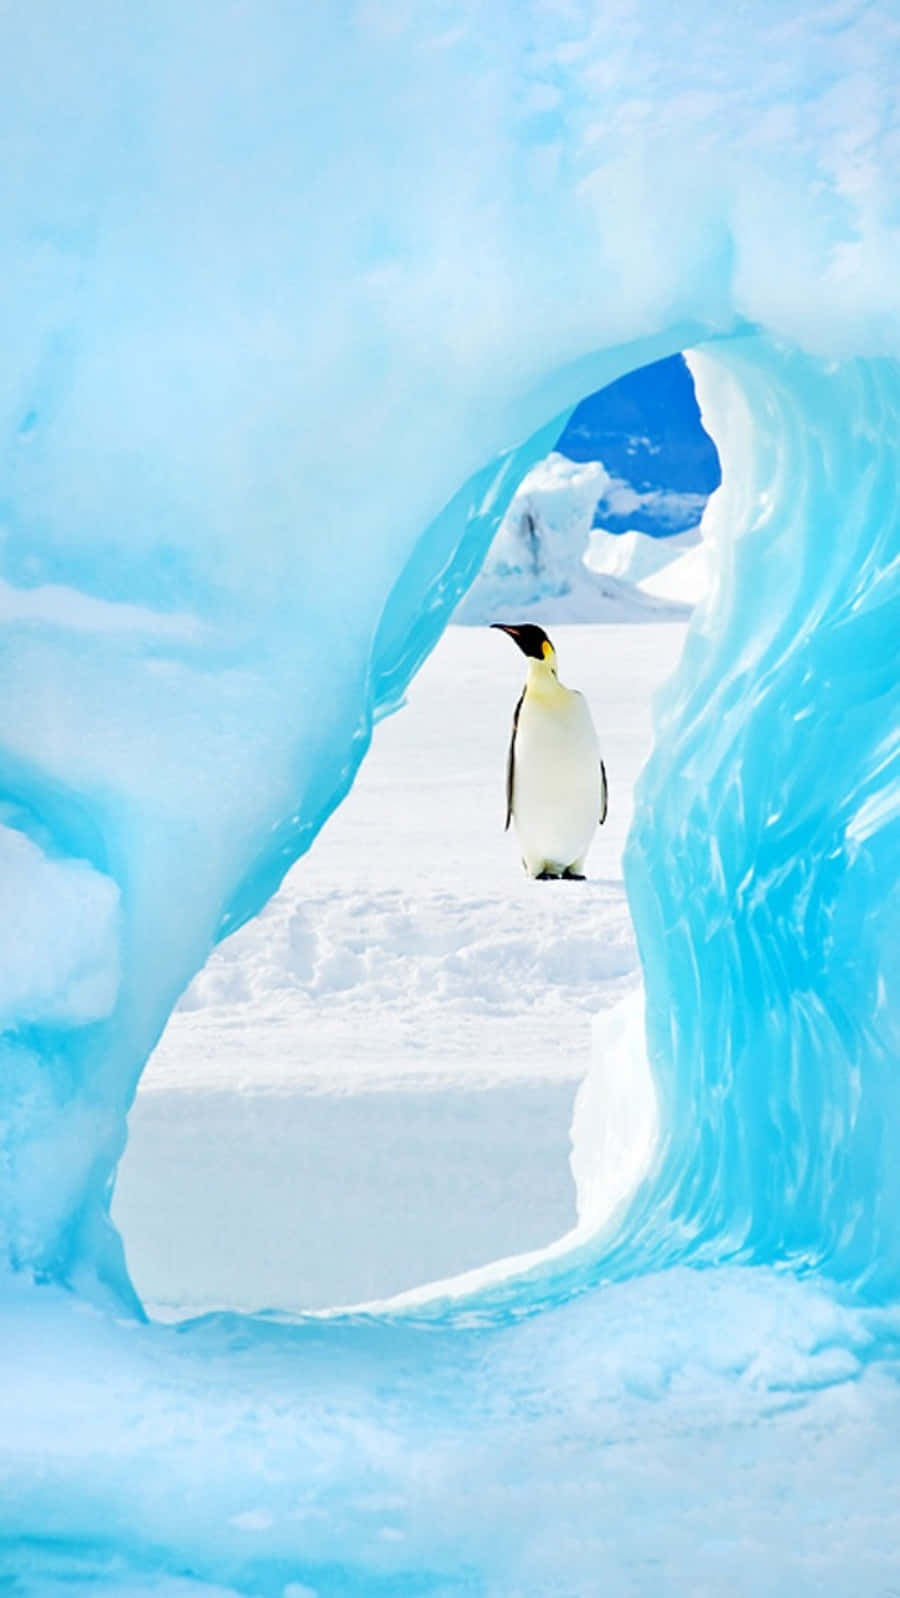 Carinaimmagine Di Un Pinguino Sulla Neve Del Ghiacciaio.